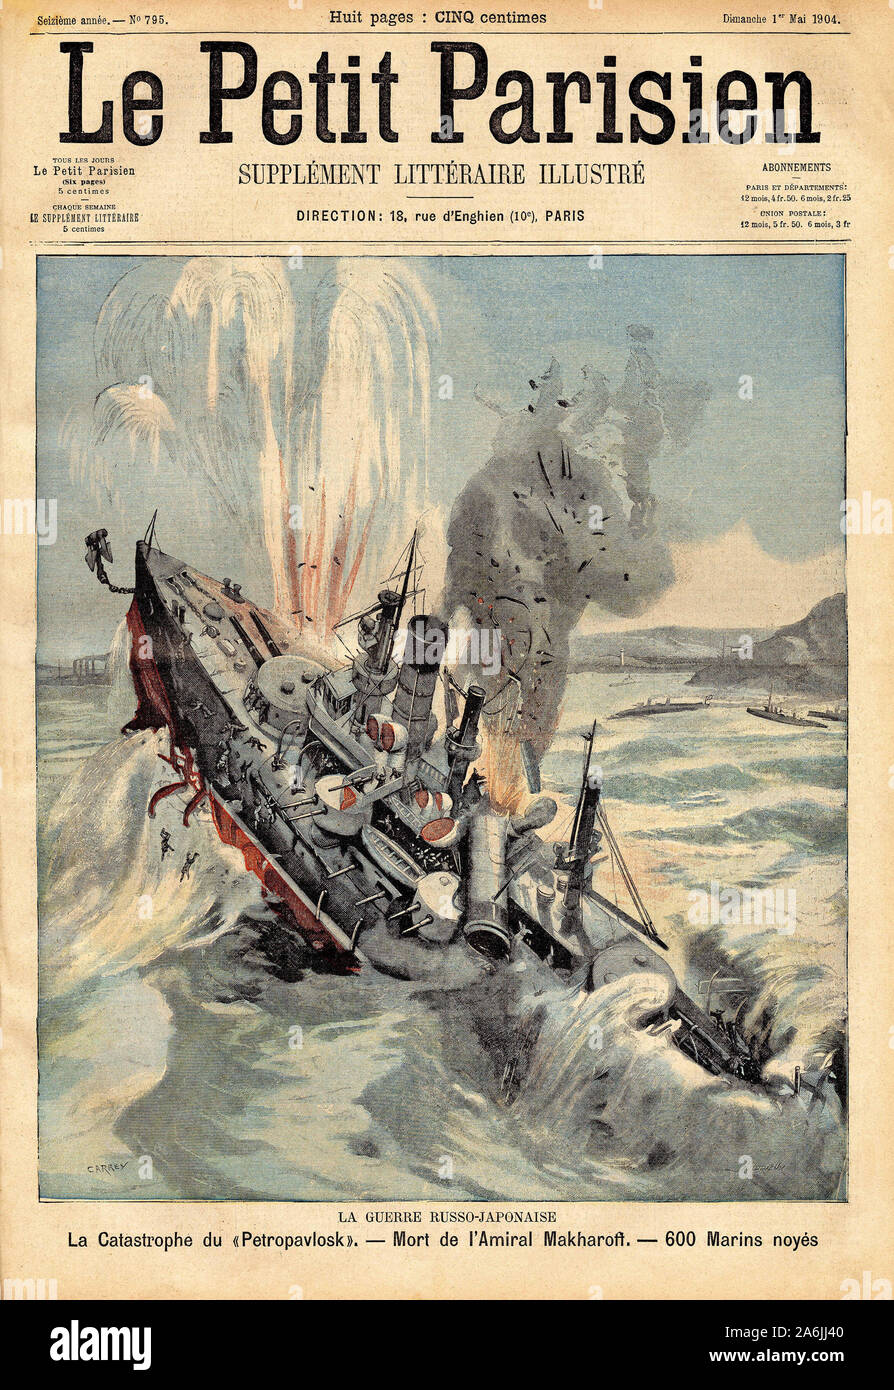 Guerre russo-japonaise (Guerre russo japonaise) : Le navire russe 'Petropavlosk' heurte accidentellement une torpille flottante, entrainant la mort de Stock Photo